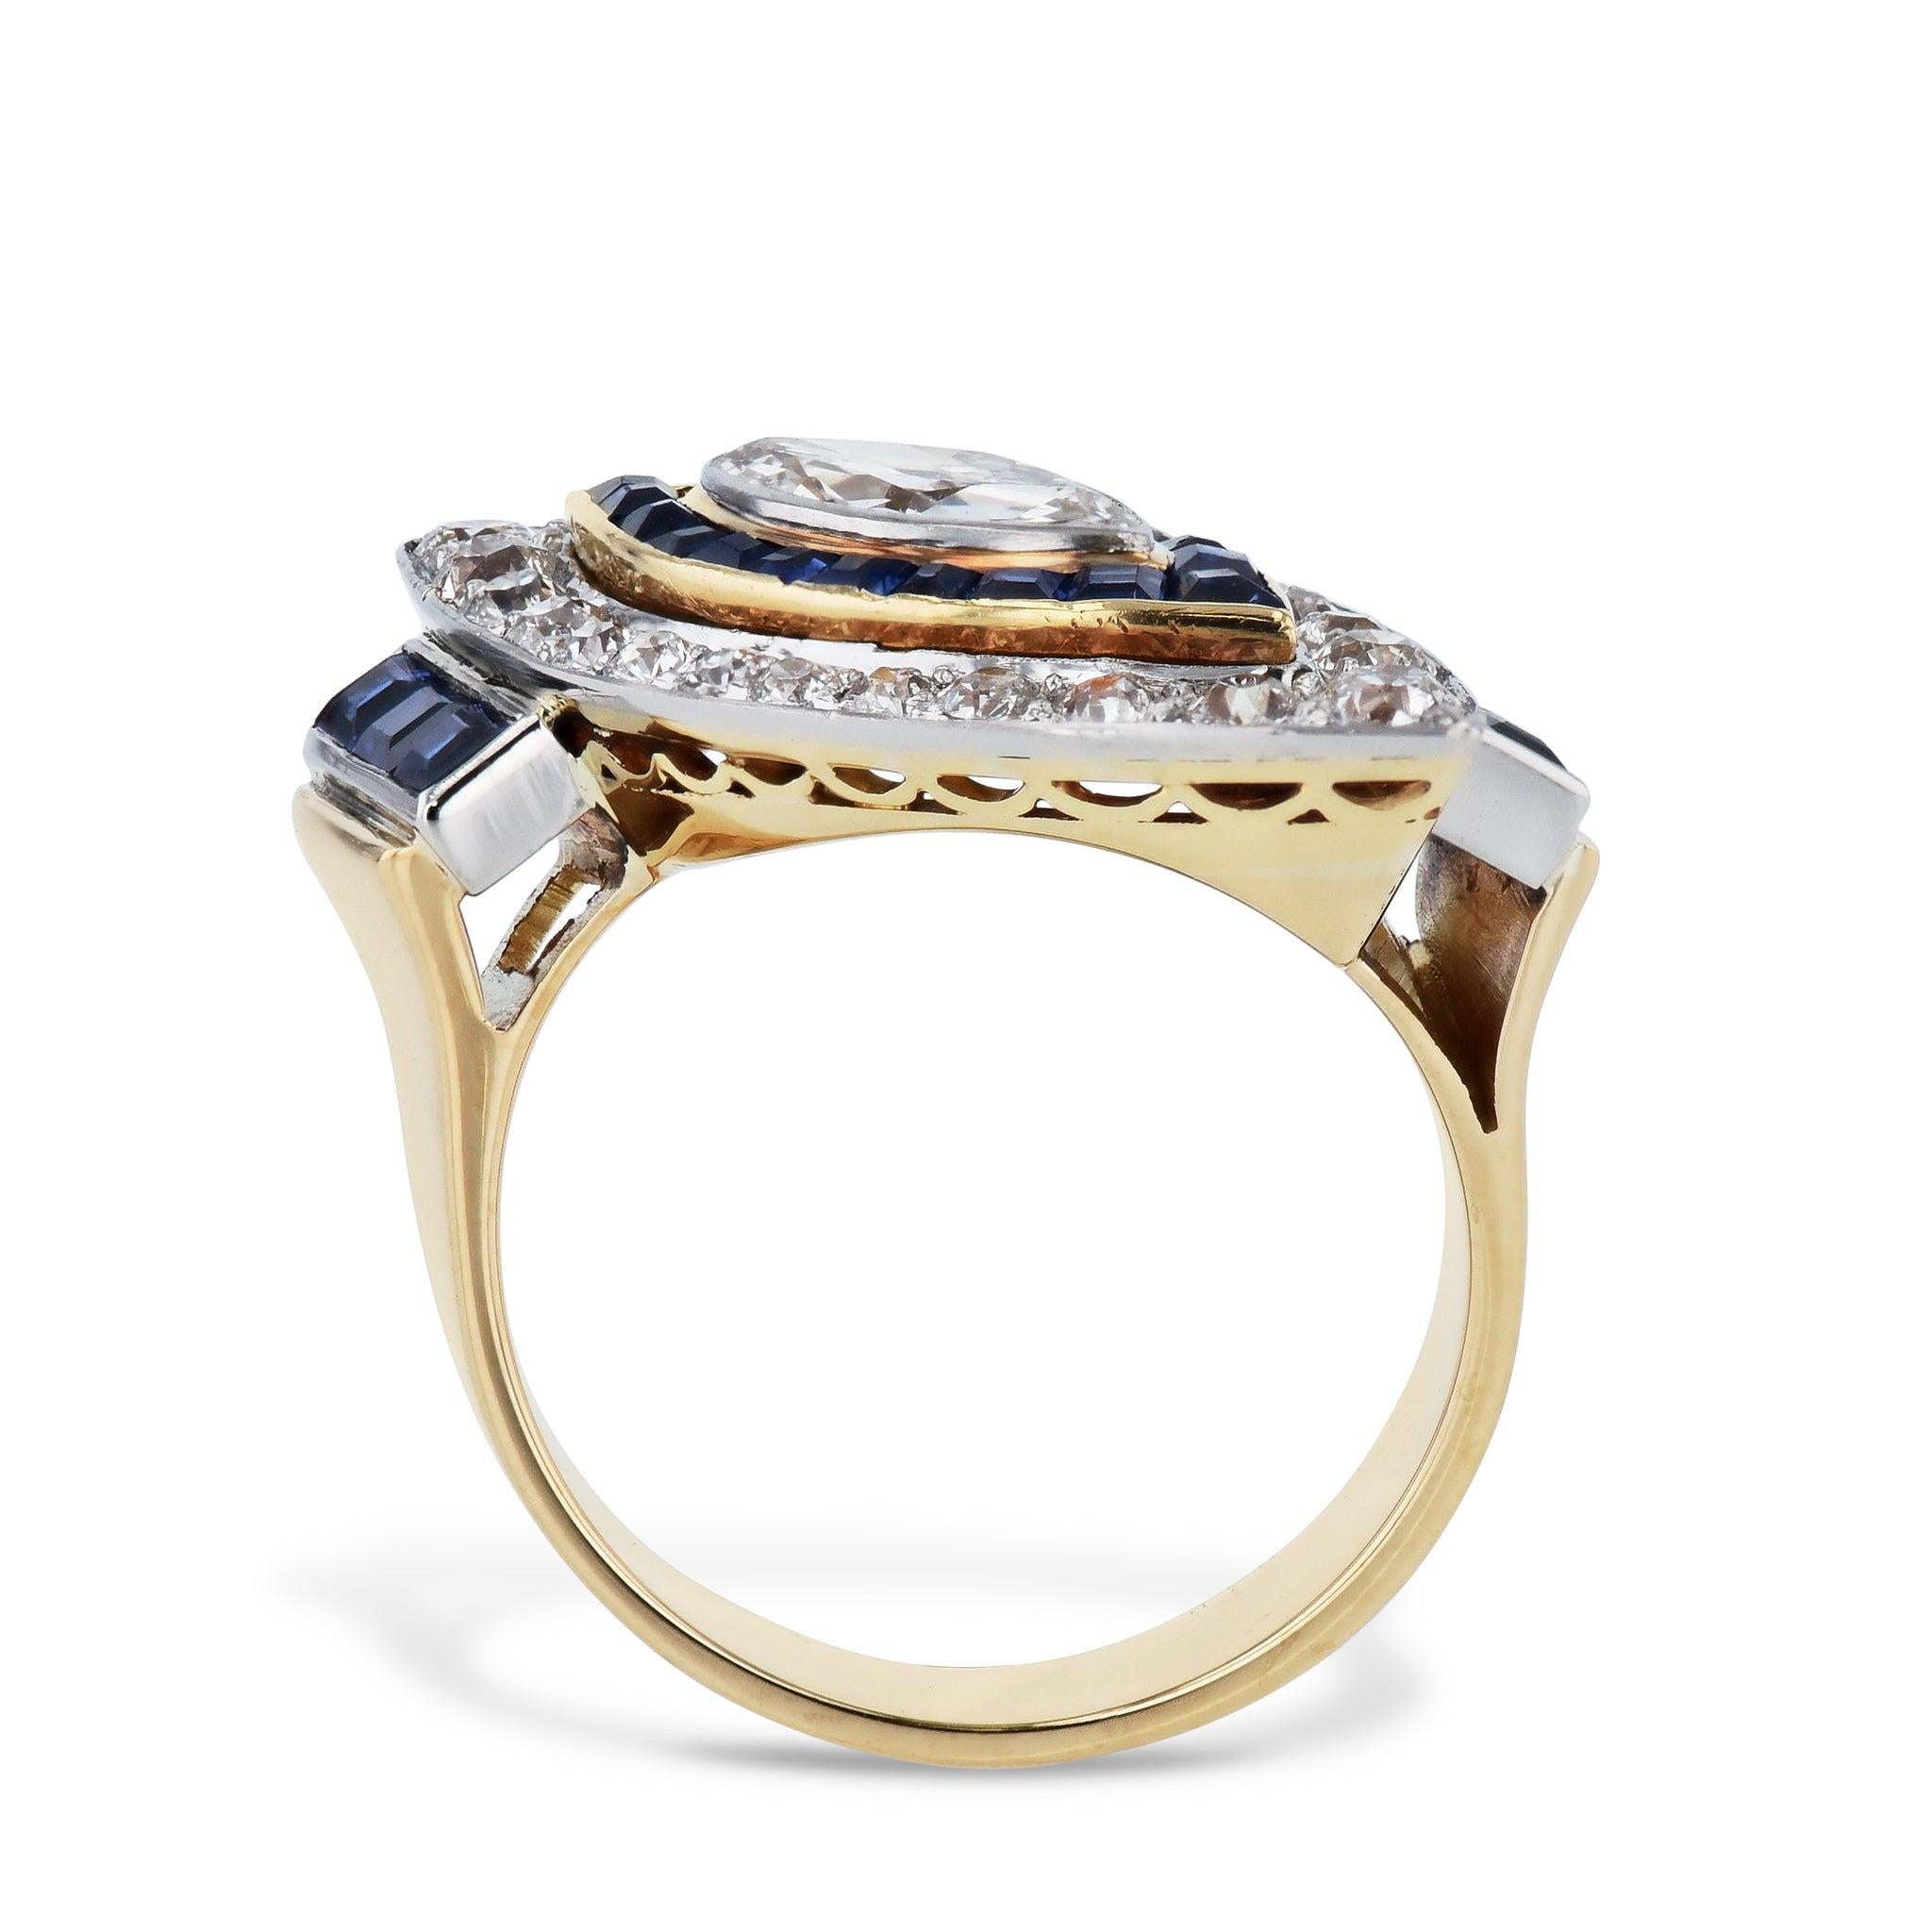 Cette bague Art déco Marquise Diamond Sapphire Estate Ring brille par sa grandeur ! Fabriqué en platine et en or jaune 18 carats, un diamant de taille Marquise entouré de 24 diamants de taille Old European (environ 0,70ct TW), 20 saphirs de taille